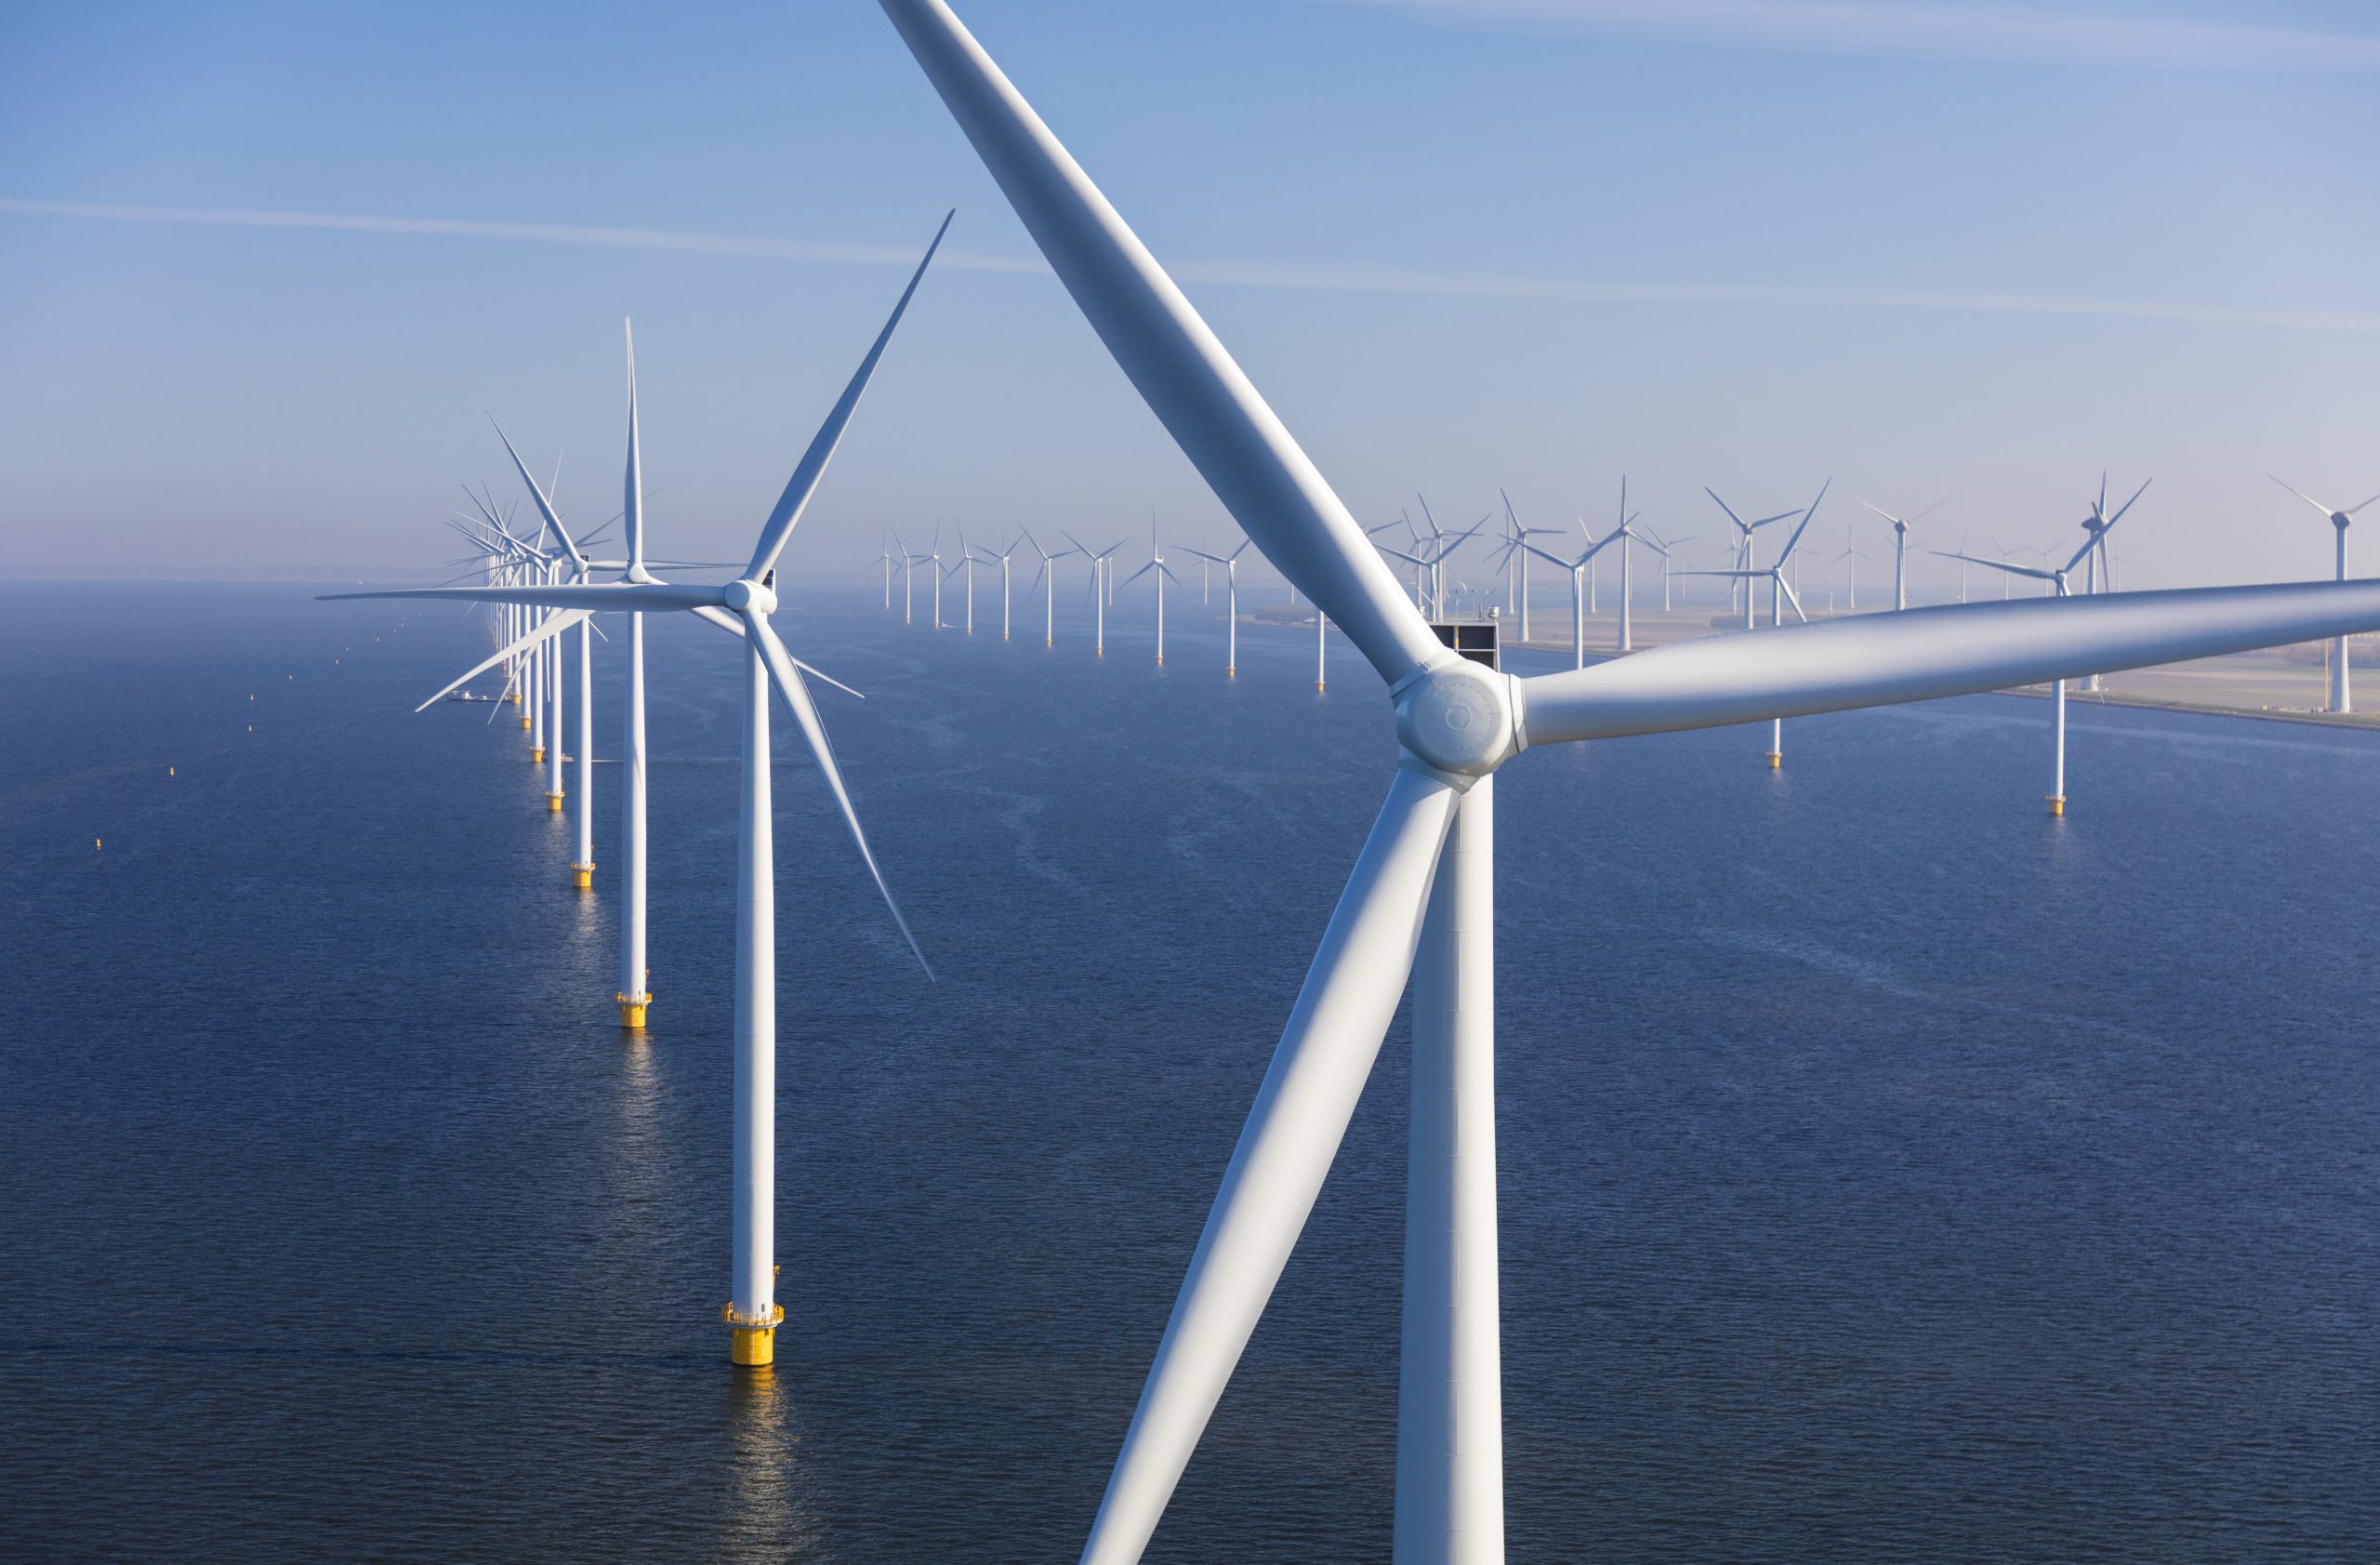 Gigantische nieuwe windparken op zee kunnen miljoenen huishoudens van energie voorzien